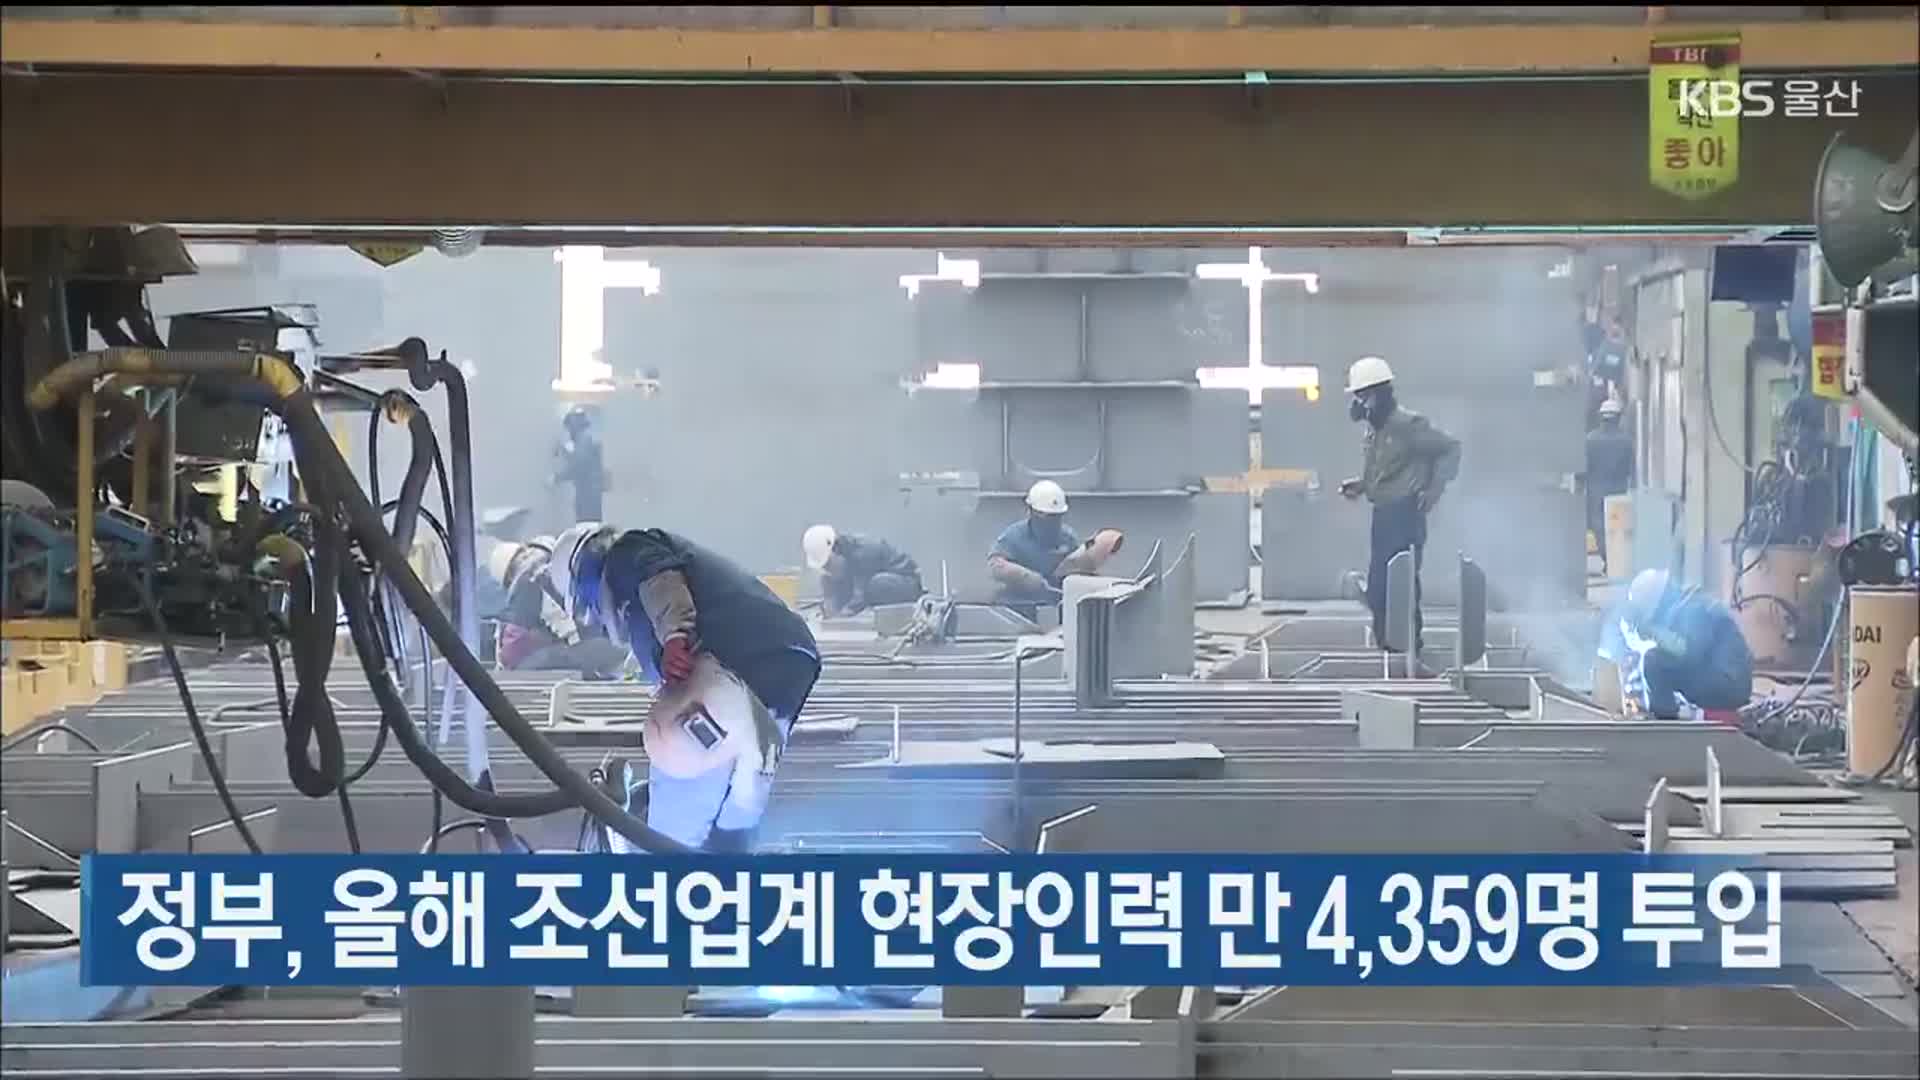 정부, 올해 조선업계 현장인력 만 4,359명 투입